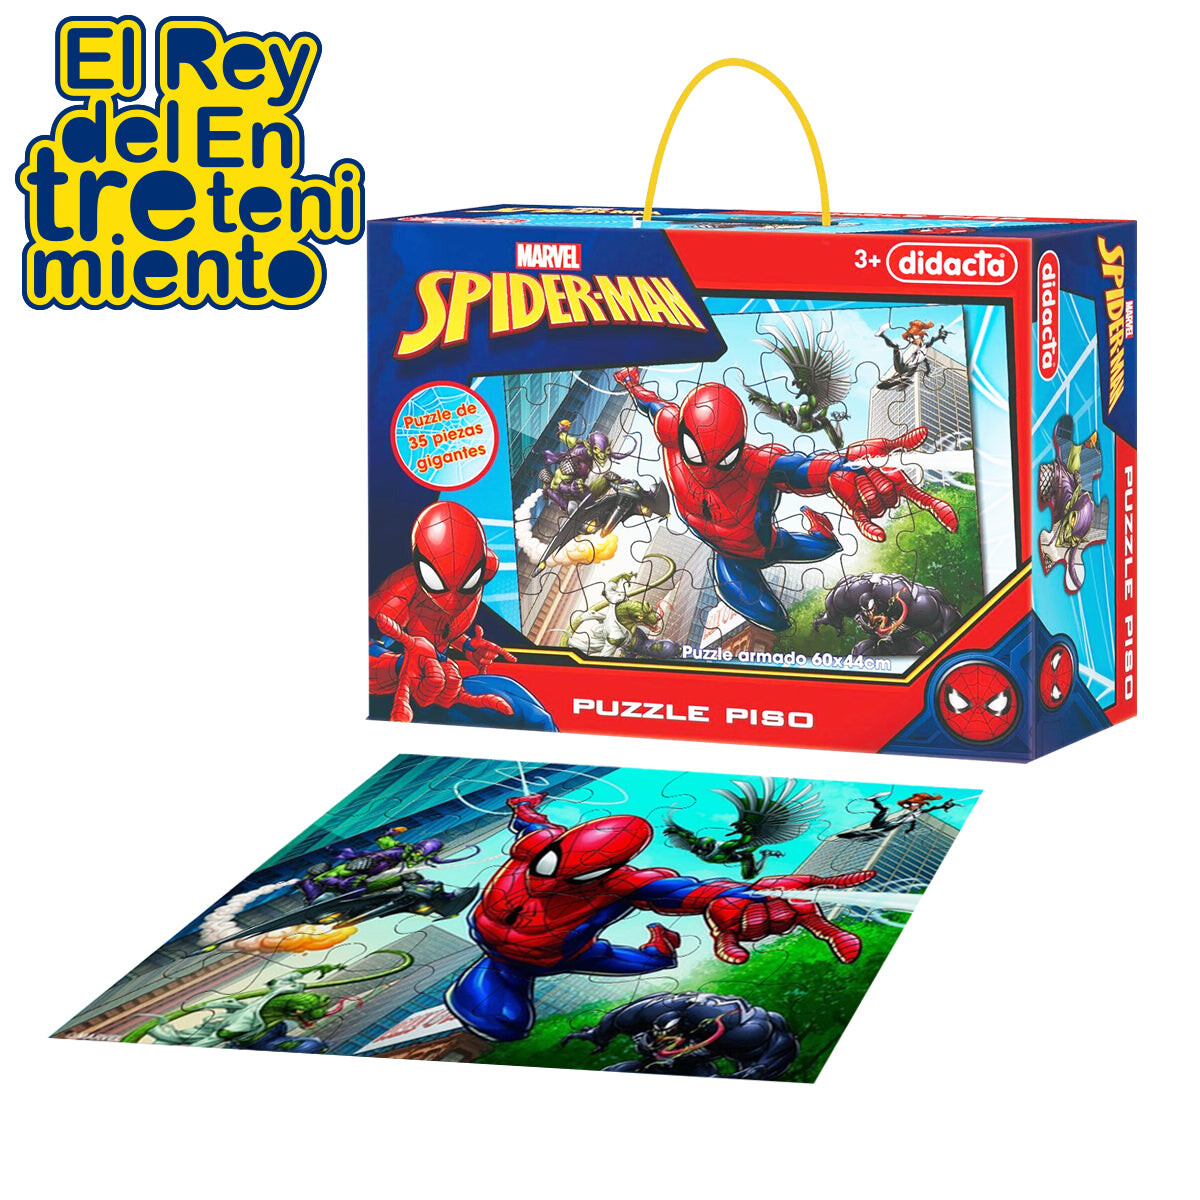 Rompecabezas Puzzle Didacta Spiderman 35 Pcs Gigantes 